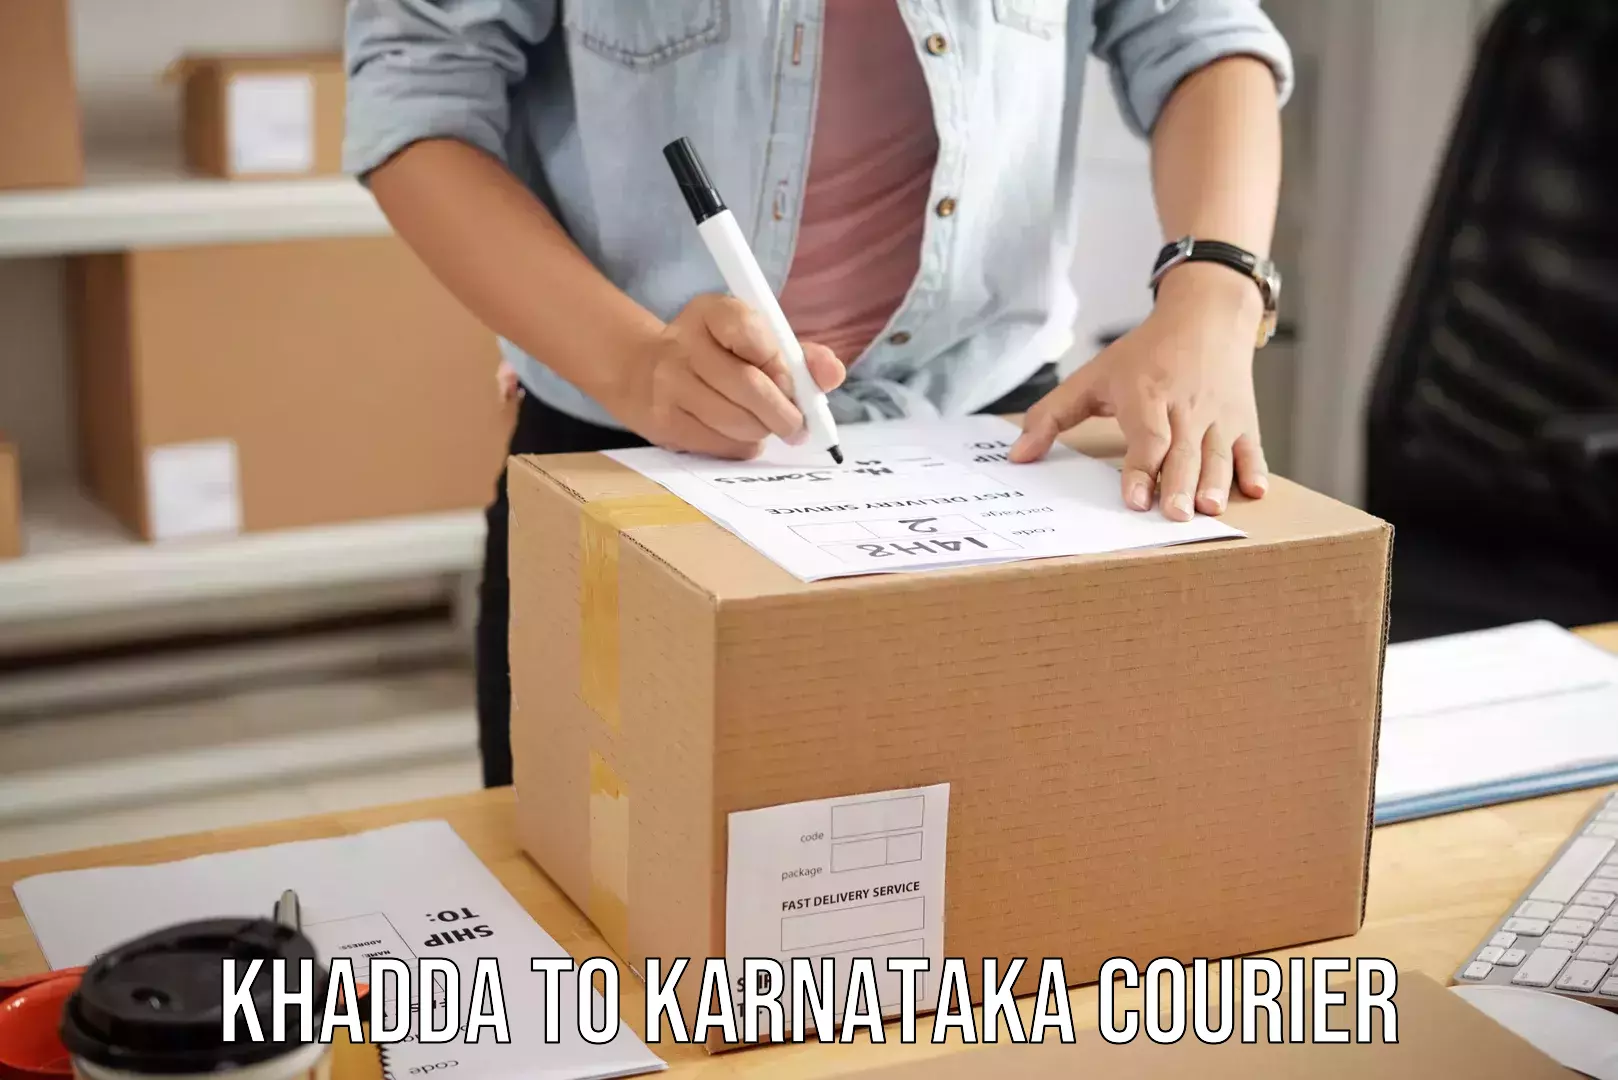 Overnight baggage shipping Khadda to Karnataka